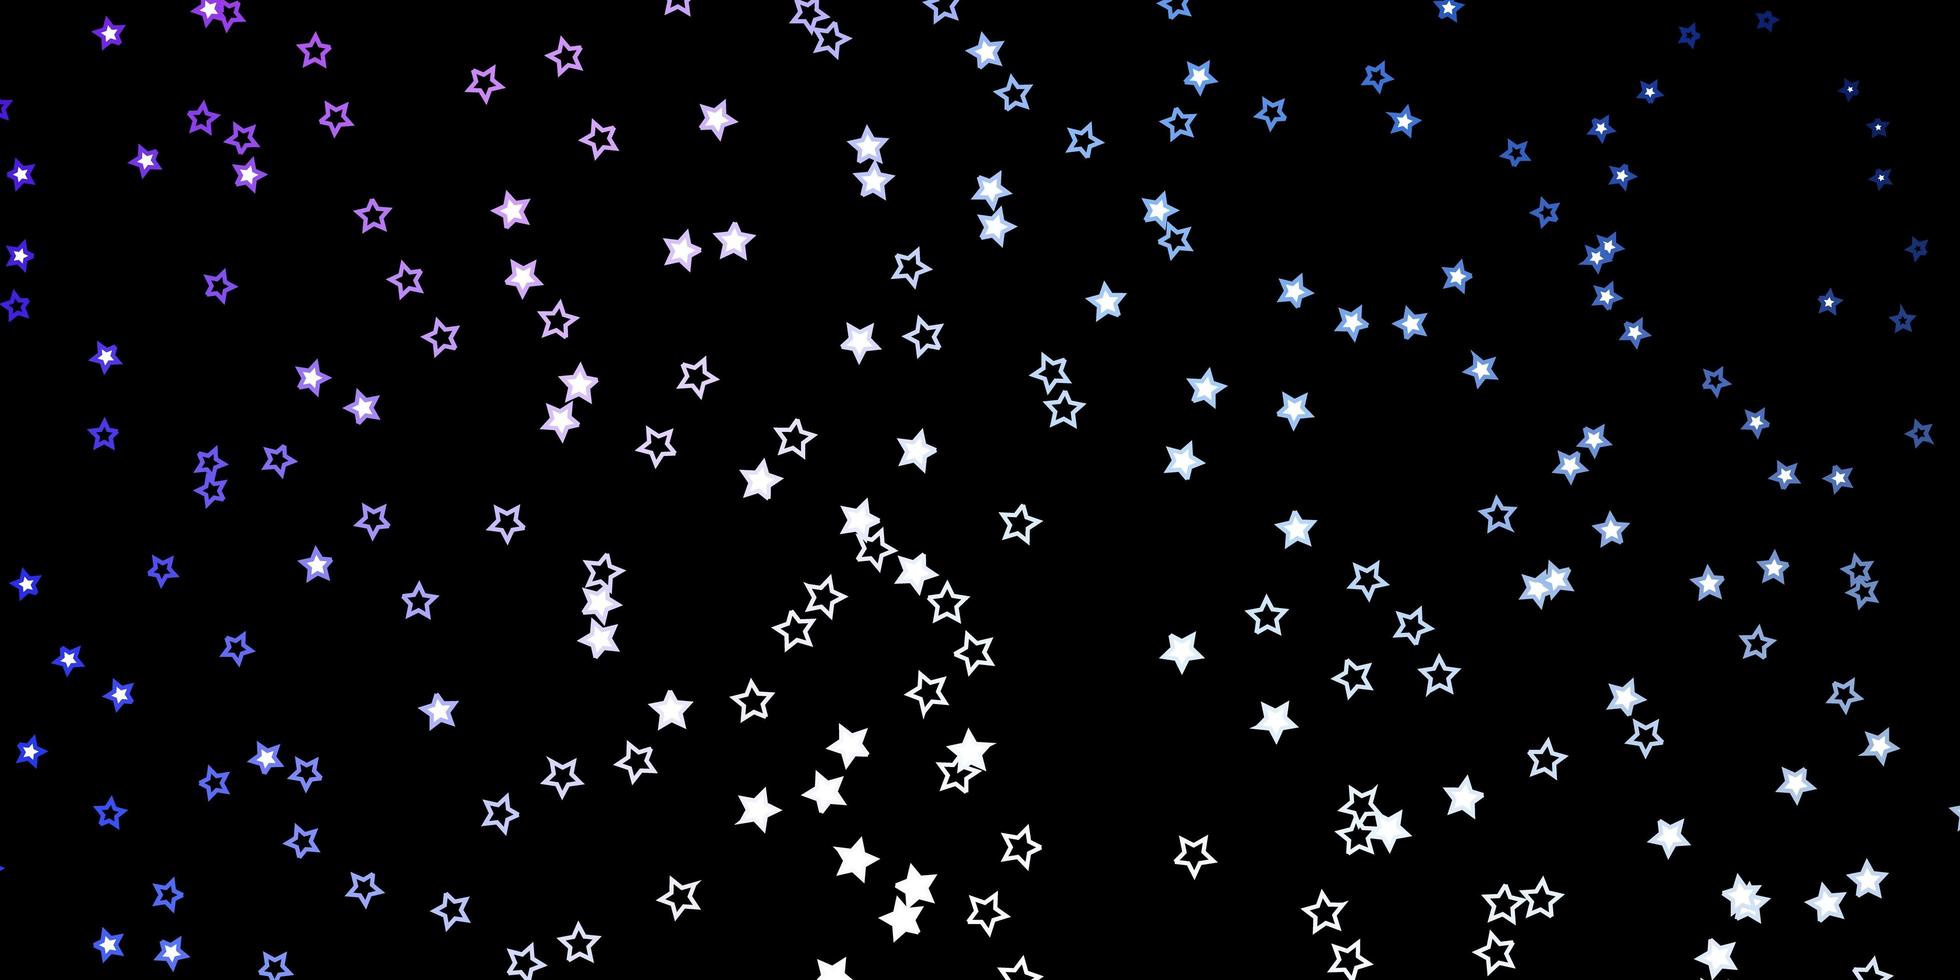 fond de vecteur rose et bleu foncé avec des étoiles colorées.